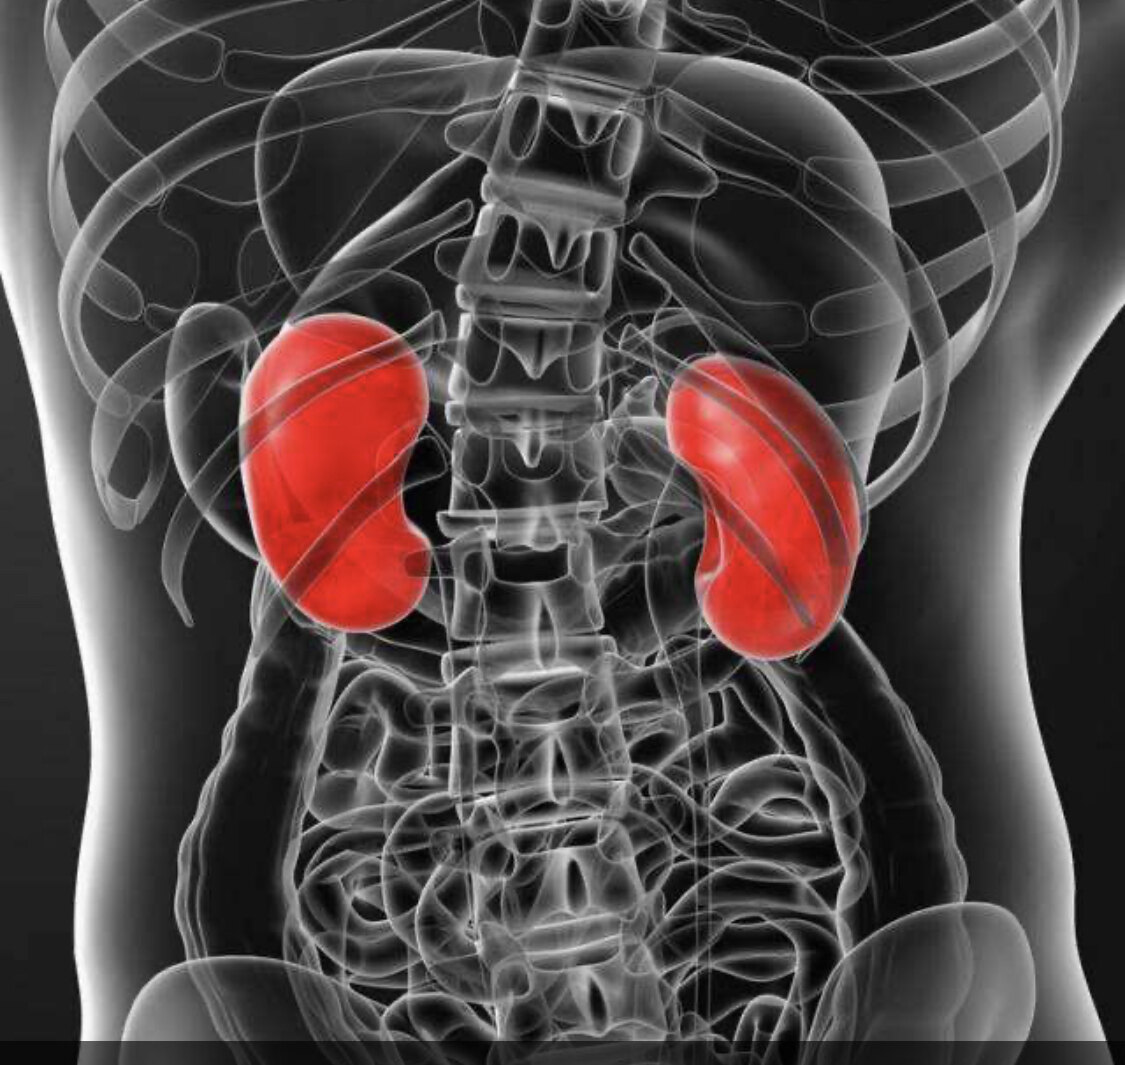 肾脏位置,大小和结构吗?人体有左右两个肾脏,分别位于腰部脊柱的两旁